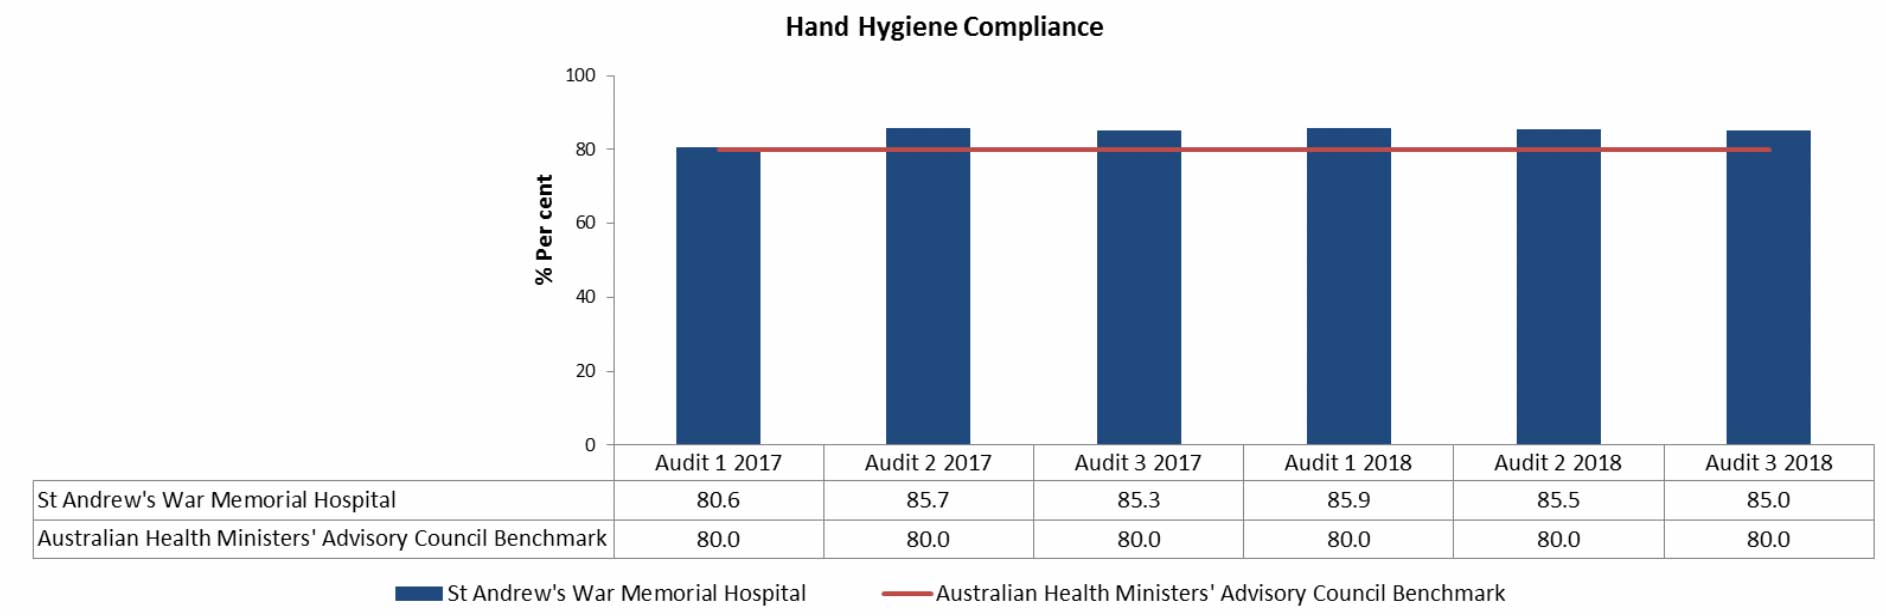 Hand-Hygiene-Compliance data